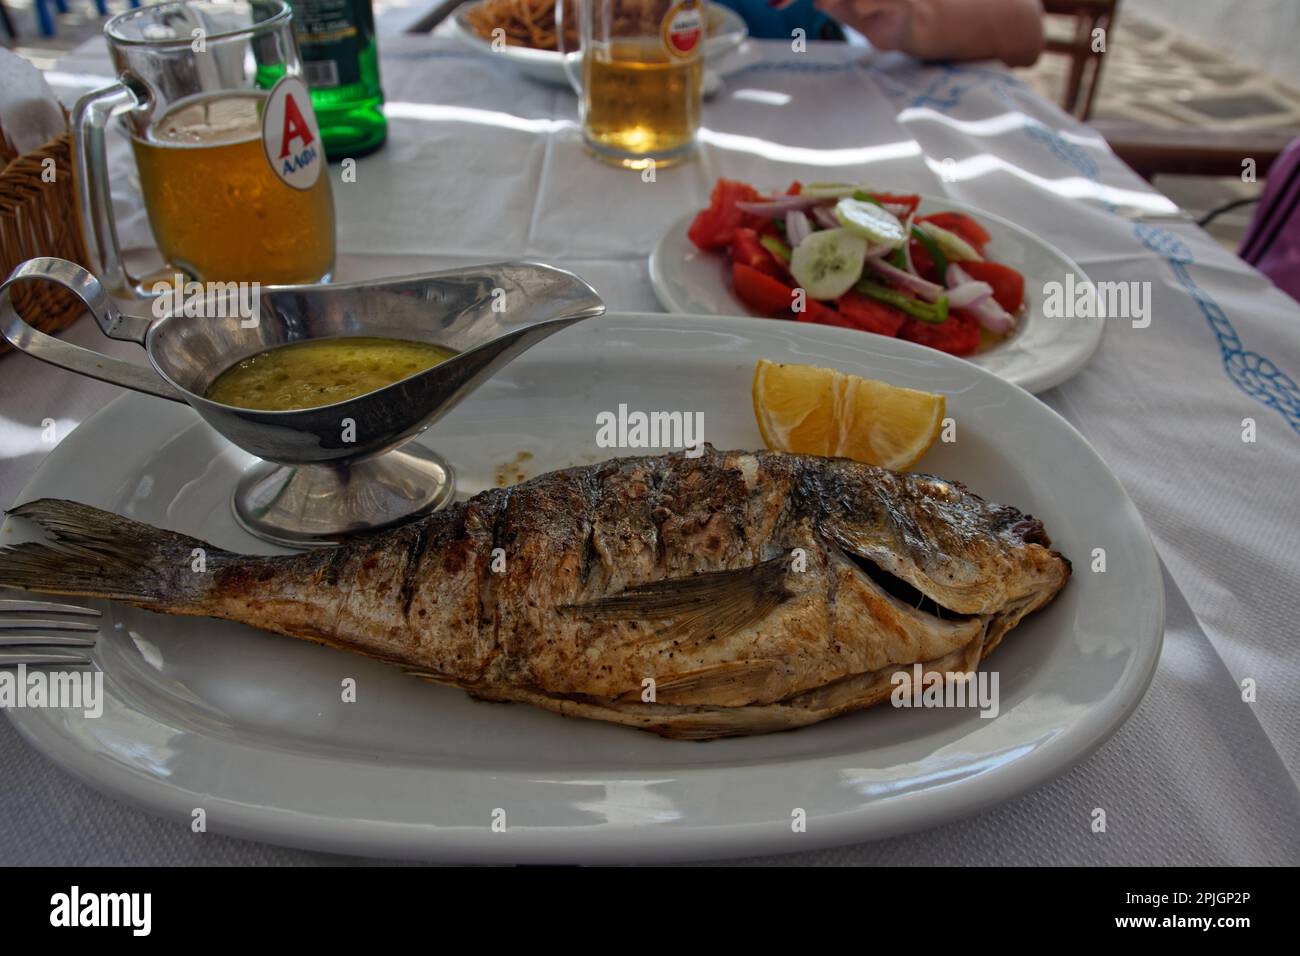 Le poisson dorado grillé au charbon de bois est un plat typique de la cuisine méditerranéenne Banque D'Images